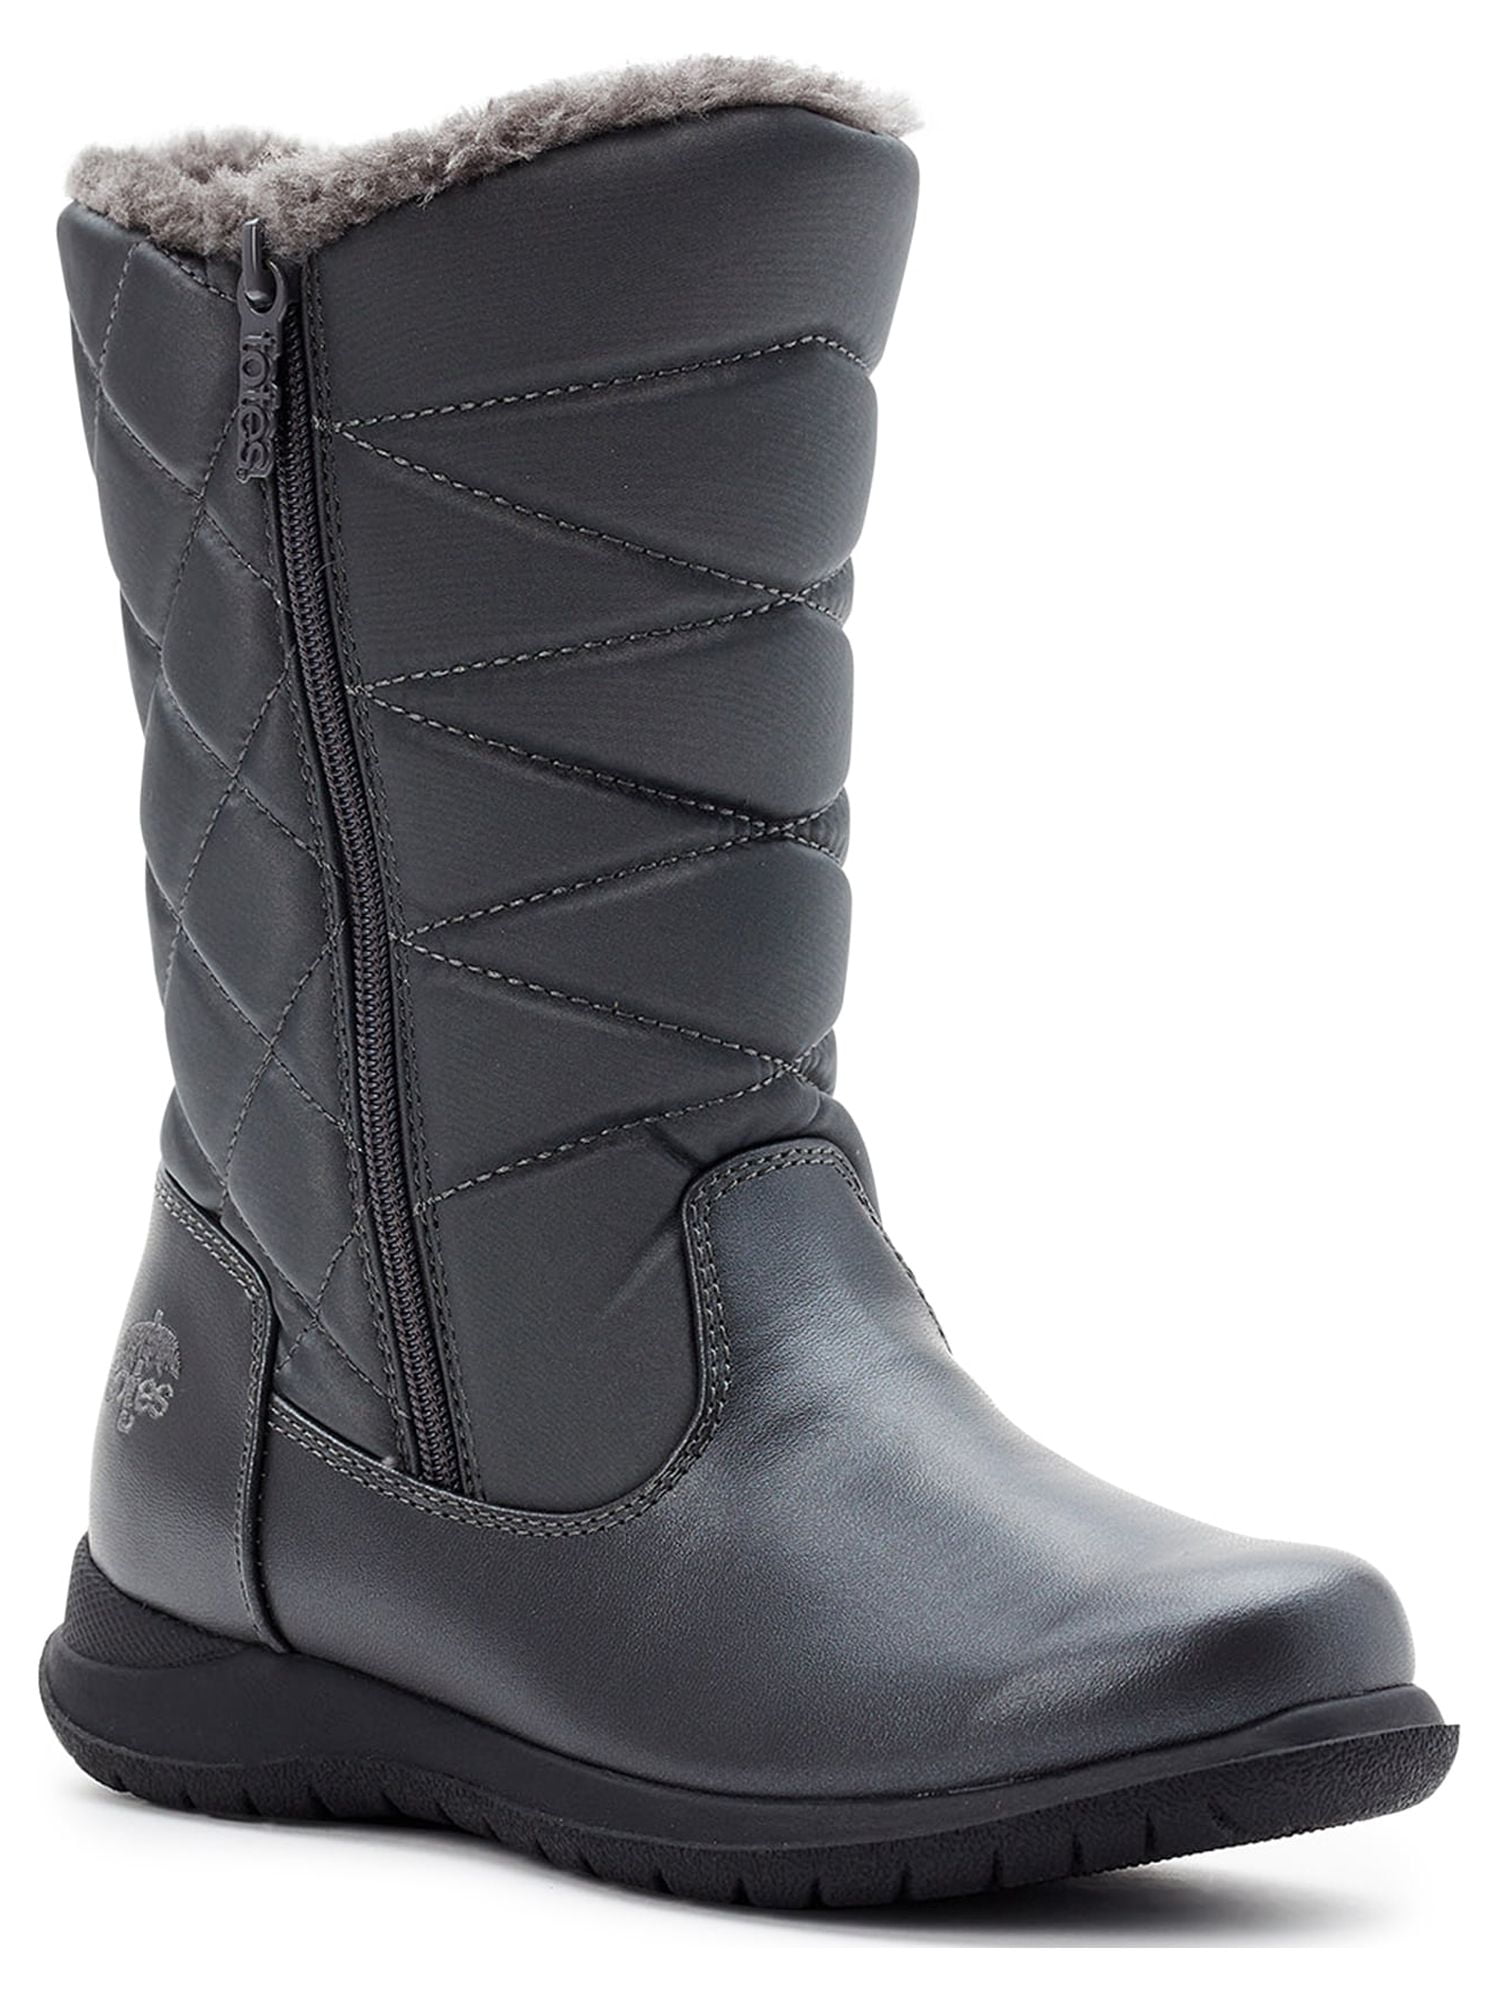 wide width waterproof boots